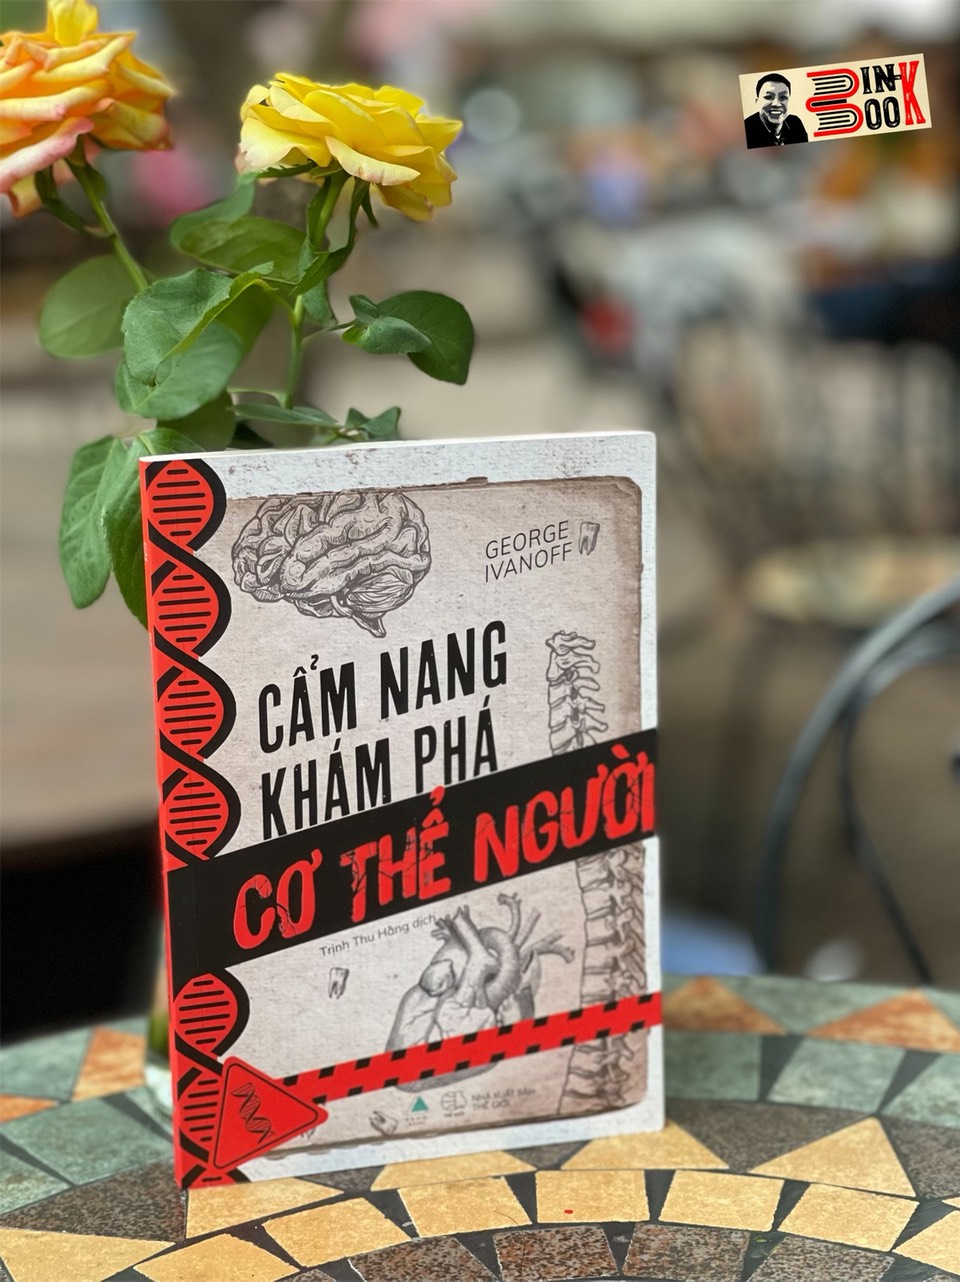 CẨM NANG KHÁM PHÁ CƠ THỂ NGƯỜI – George Ivanoff – Trịnh Thu Hằng dịch – READ Books – AZ Vietnam – NXB Thế Giới (Bìa mềm)